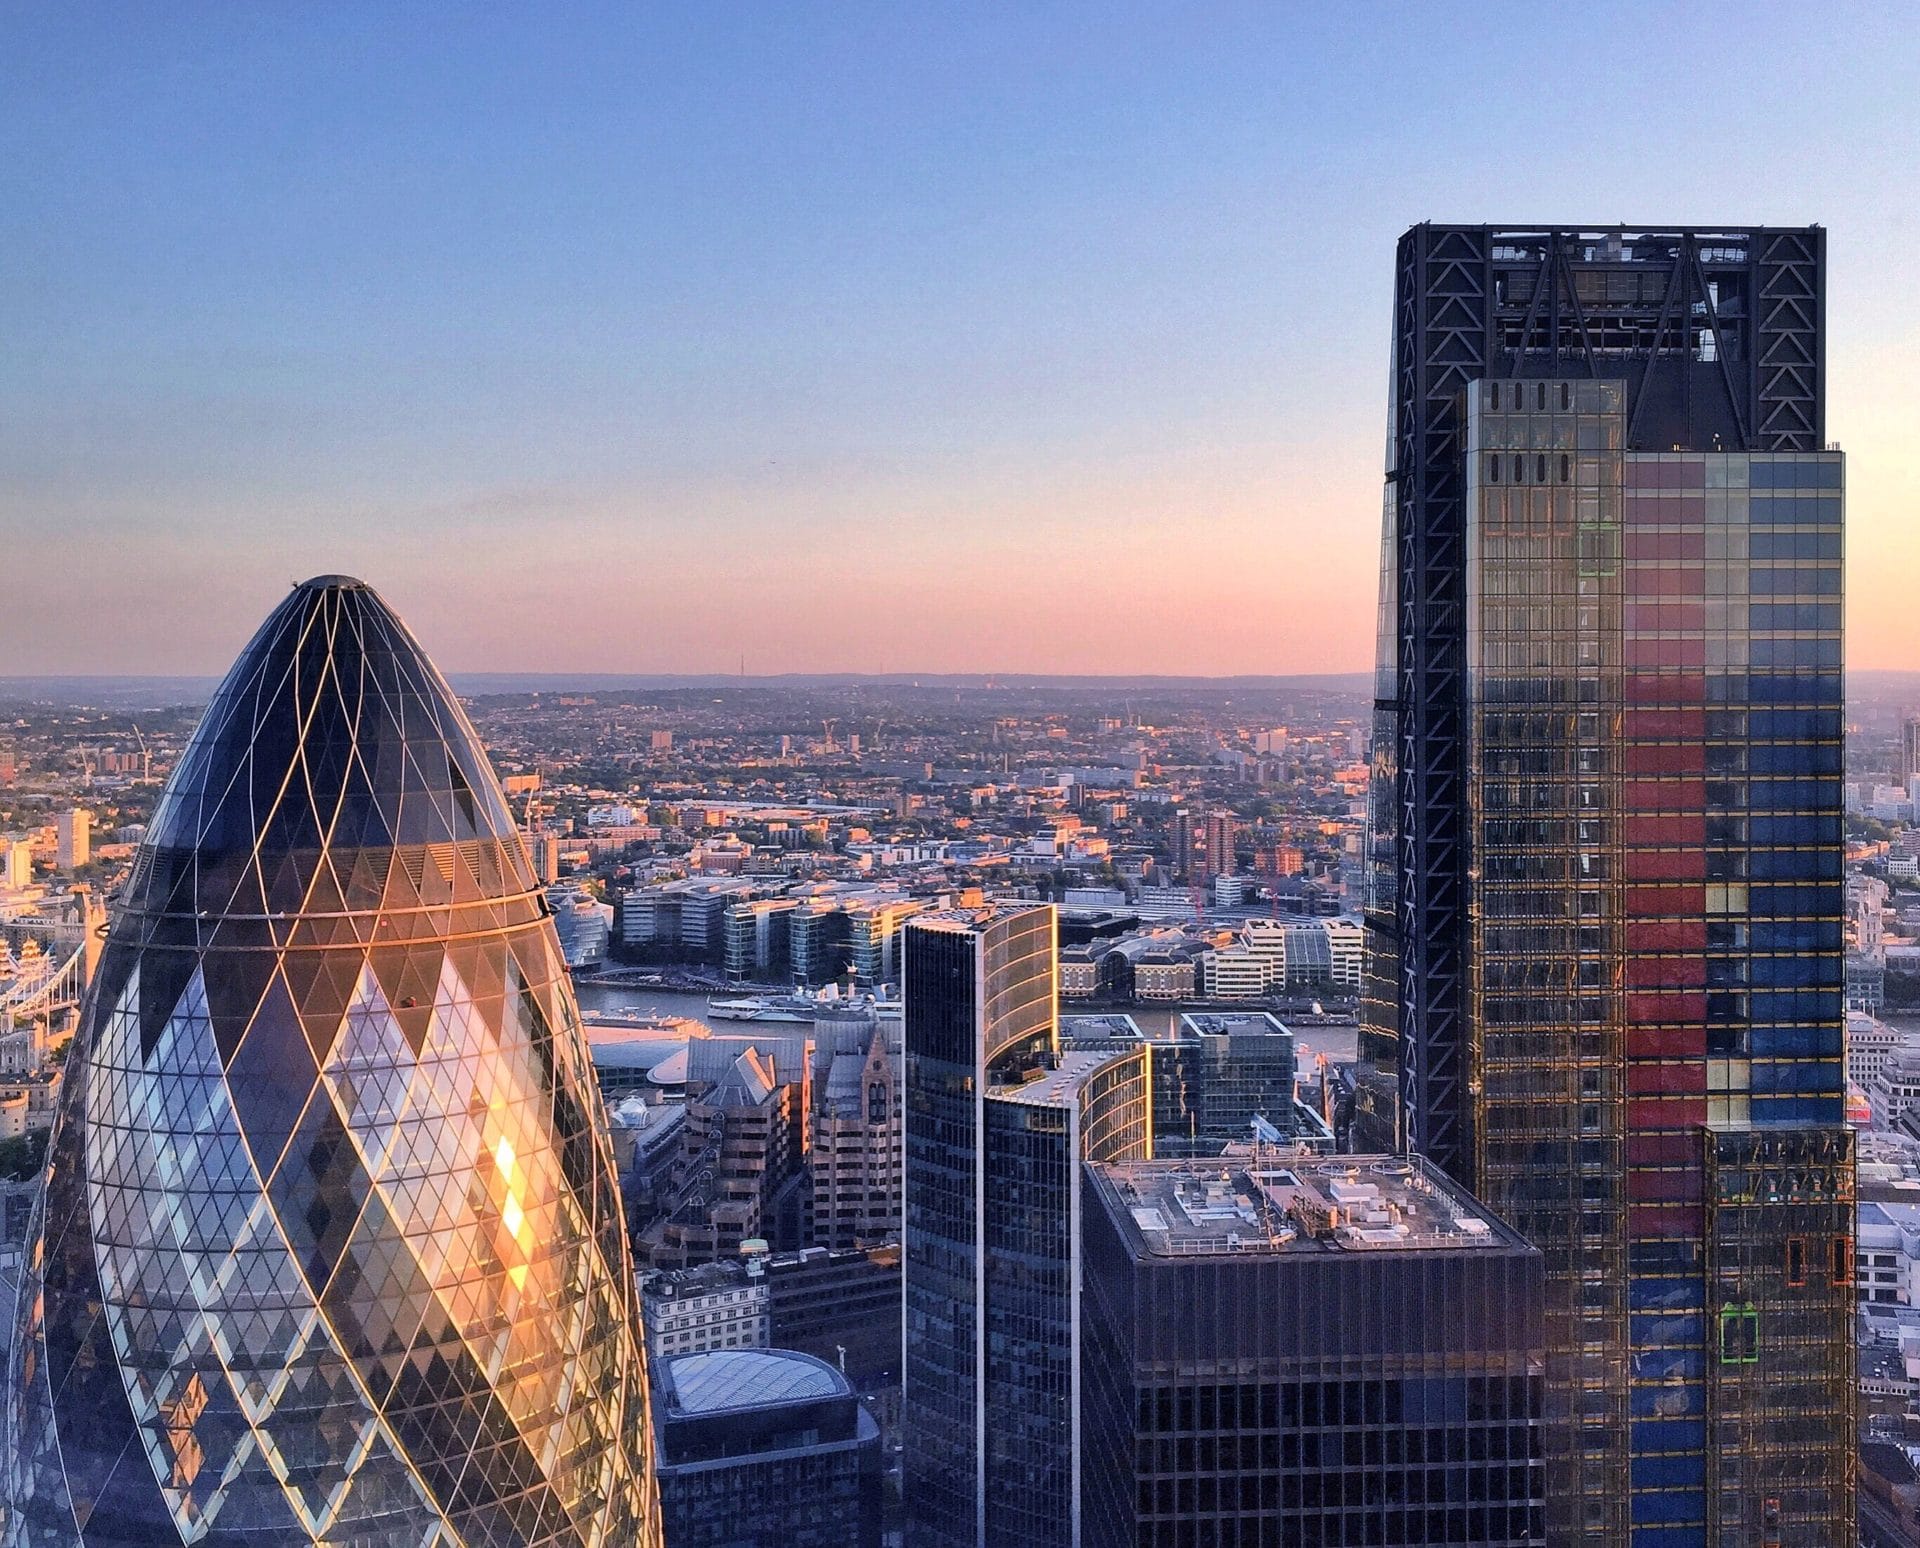 London’s skyscrapers still in demand